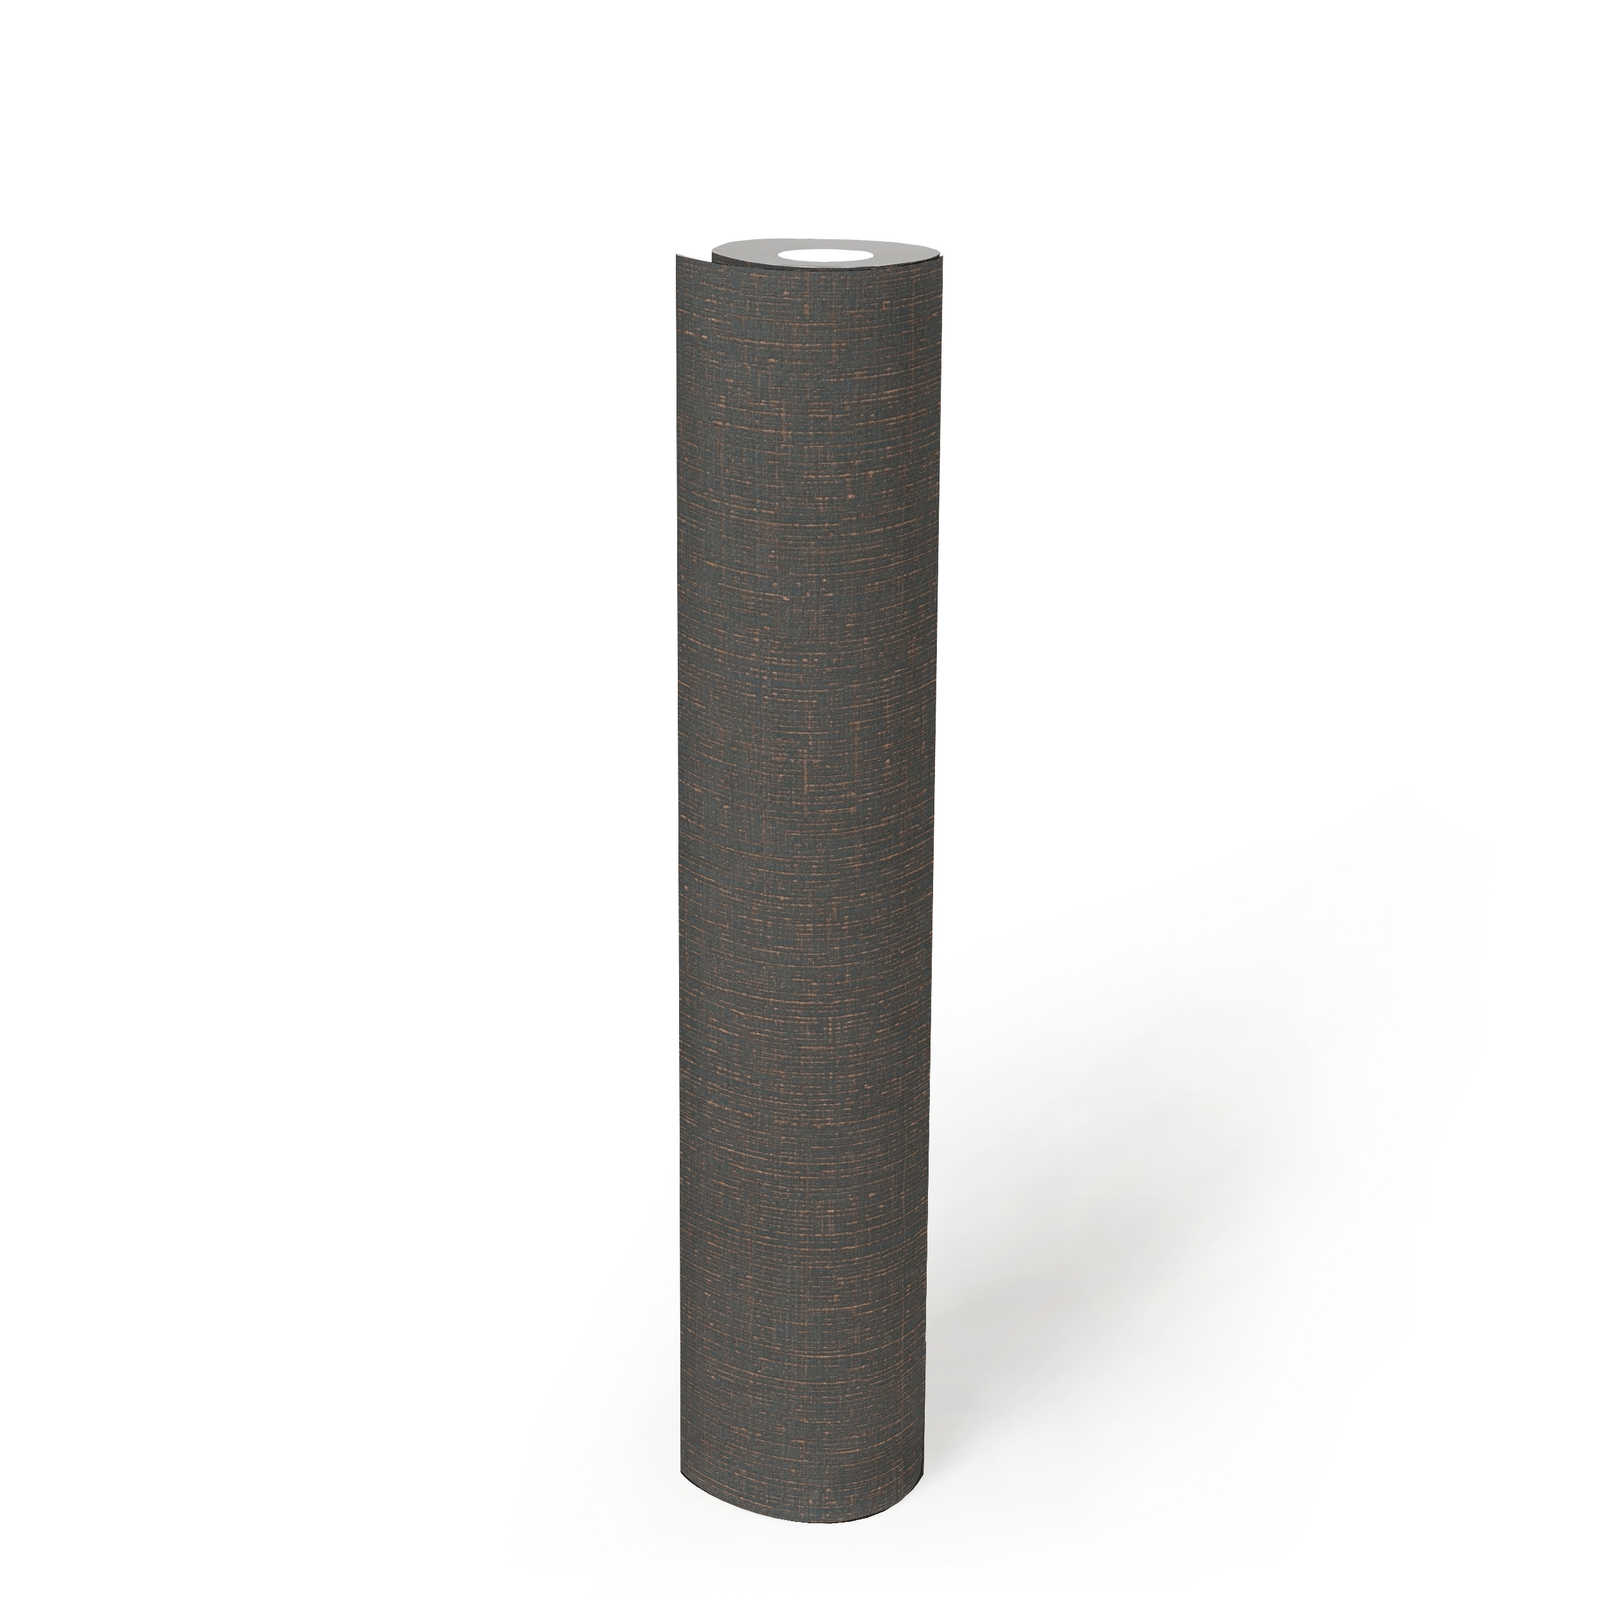             Papier peint aspect textile anthracite avec structure lin - noir, gris
        